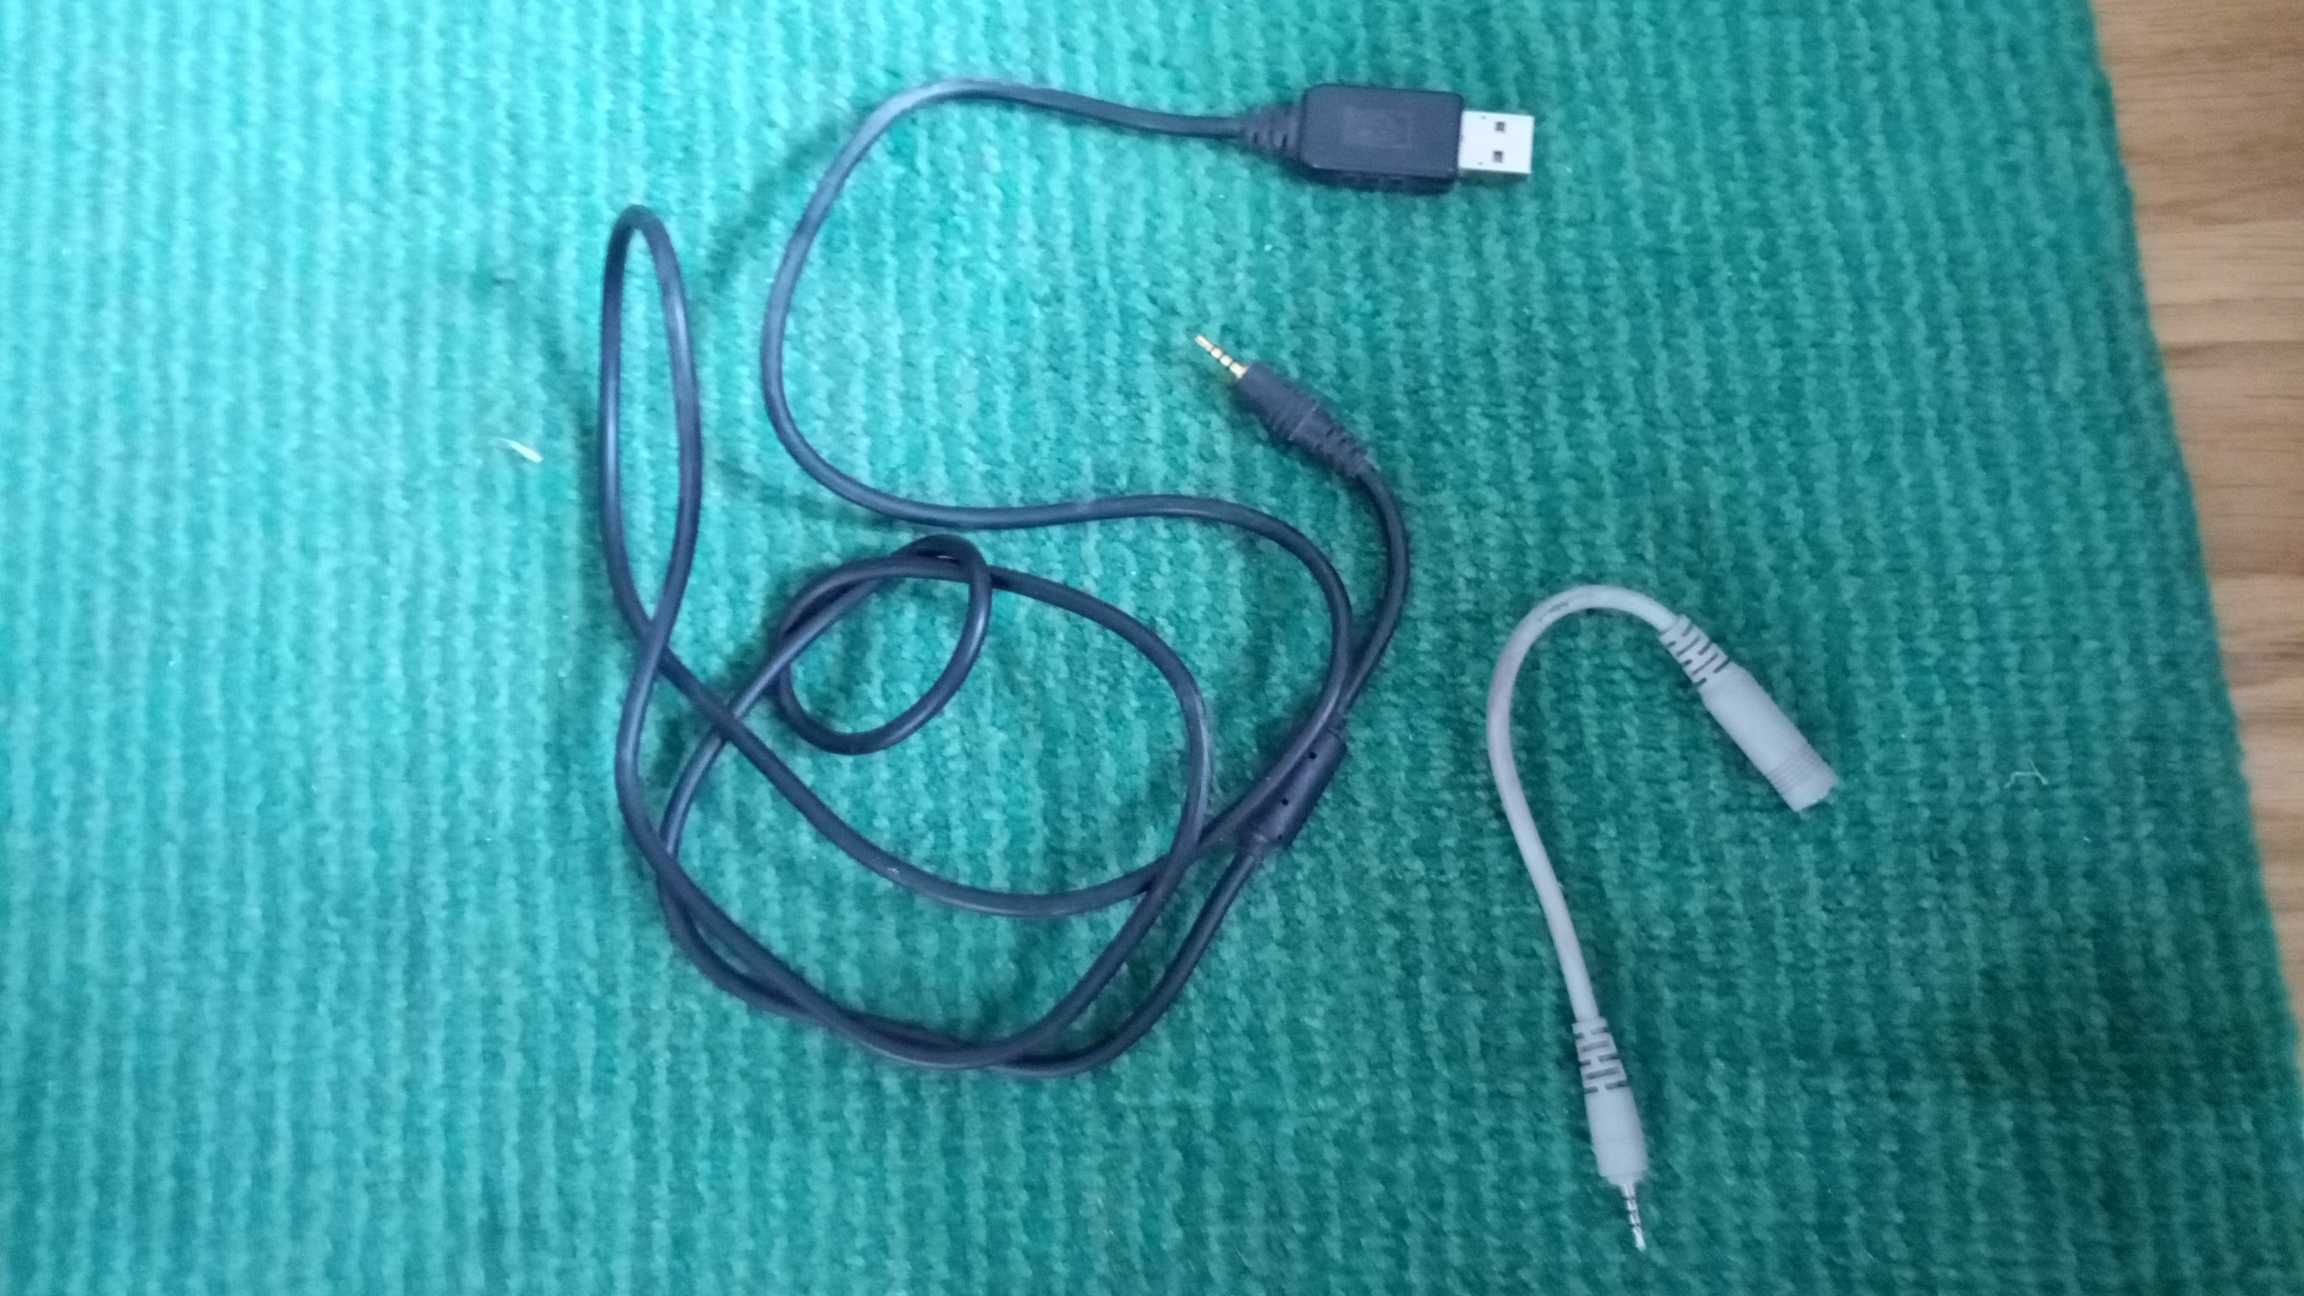 "ЮСБ - джек" кабель для старого телефону Нокія (Nokia USB-jack cable)